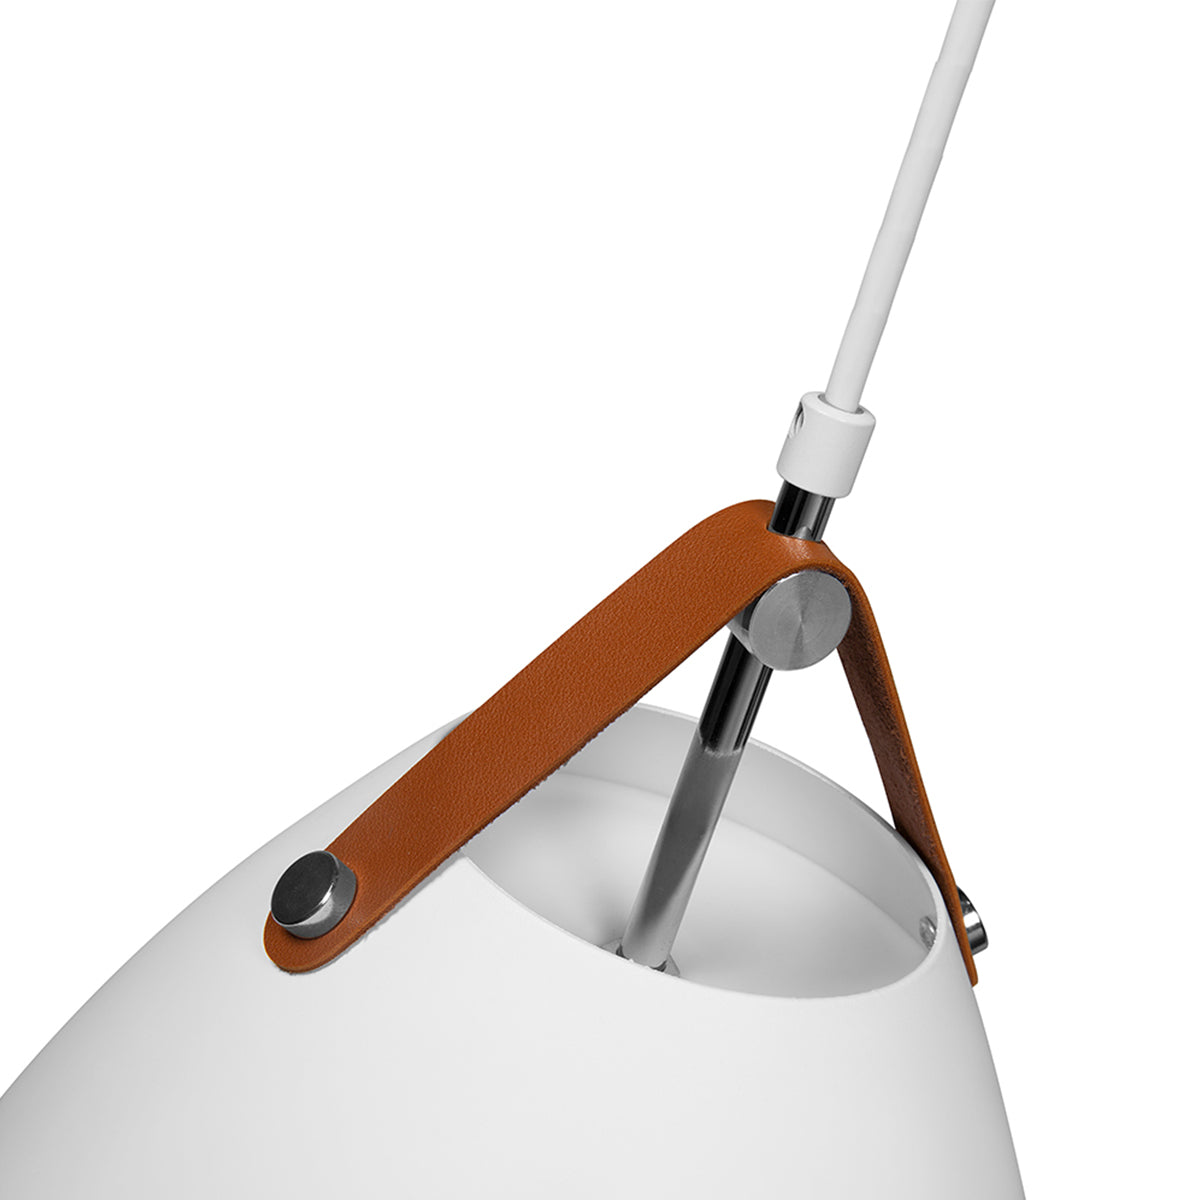 Lámpara LED de Suspender en Techo, Diseño Nórdico Minimalista, Modelo DL-2401 Dekor by ILLUX